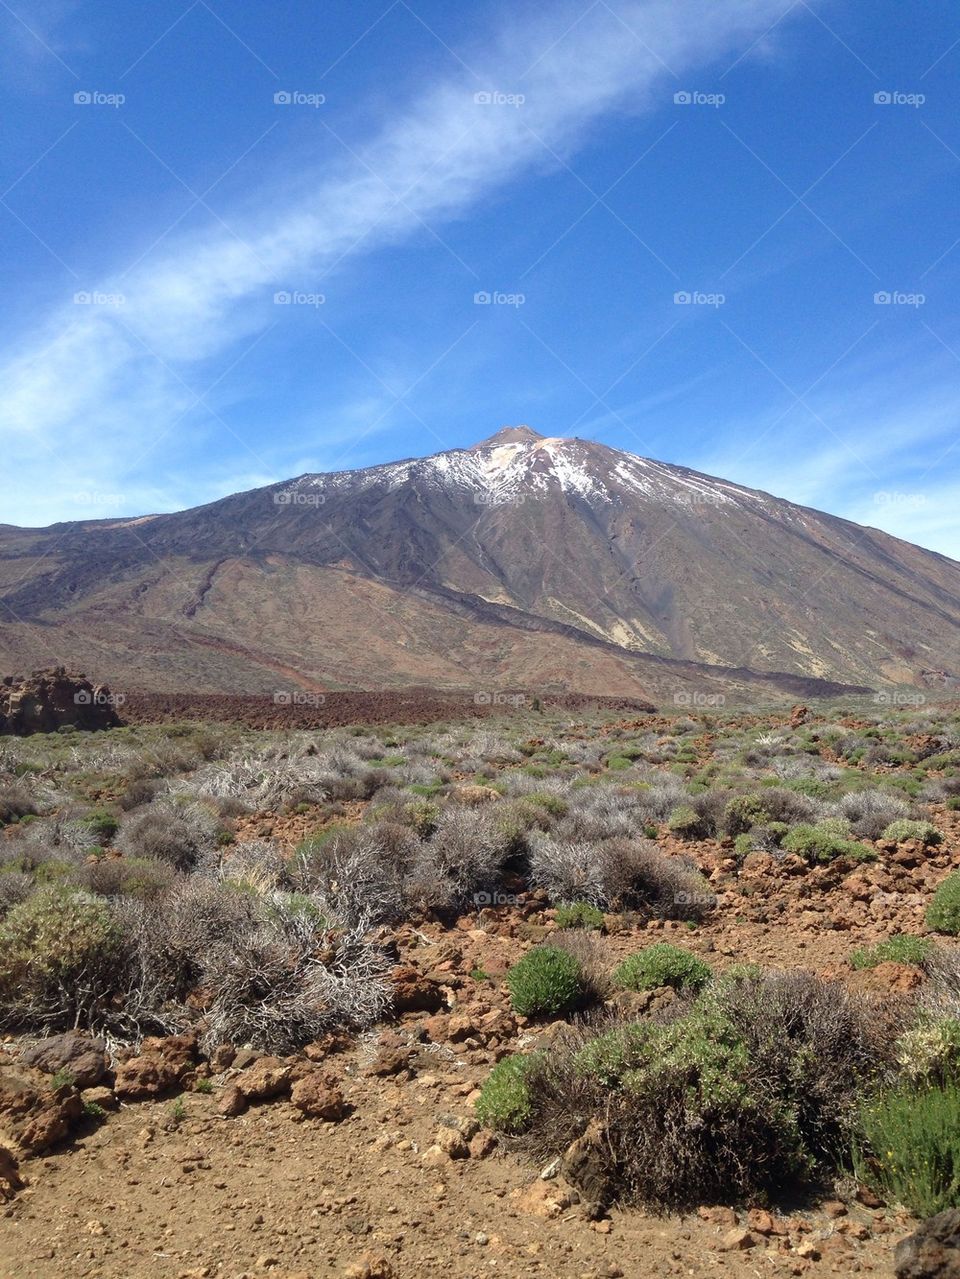 The top of El Teide